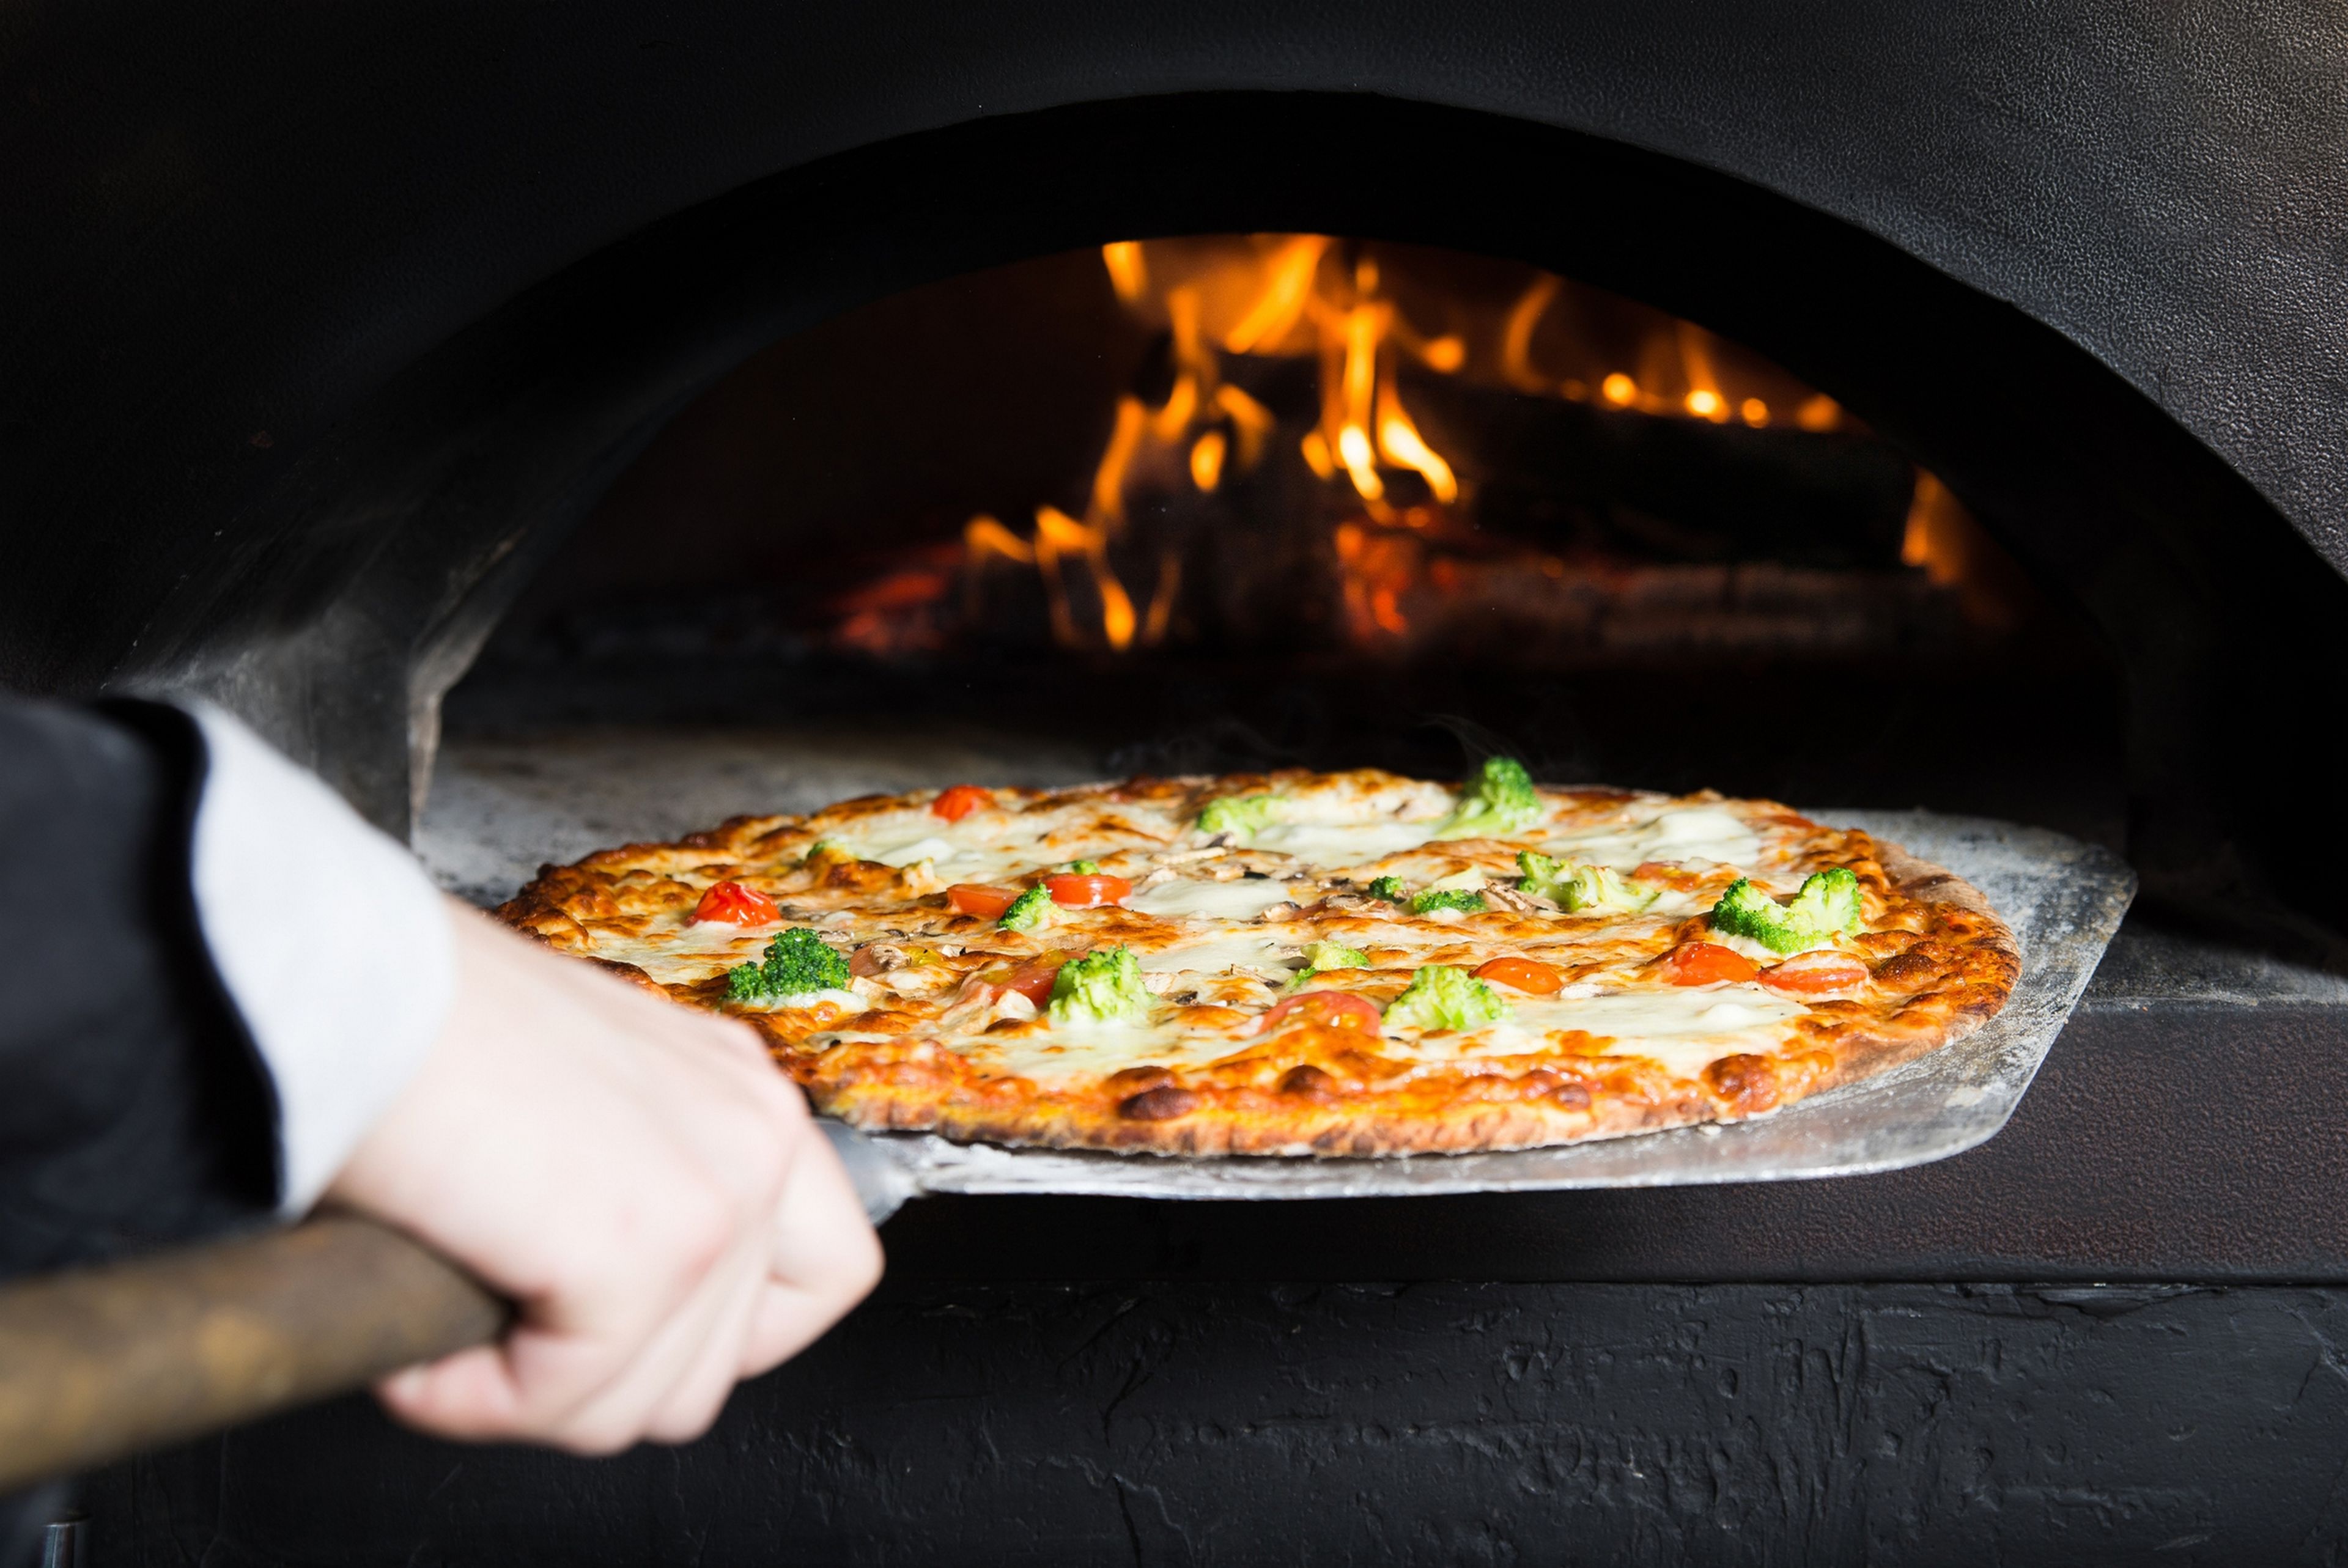 Cosas que nunca debes pedir en un restaurante o pizzería, según varios chefs